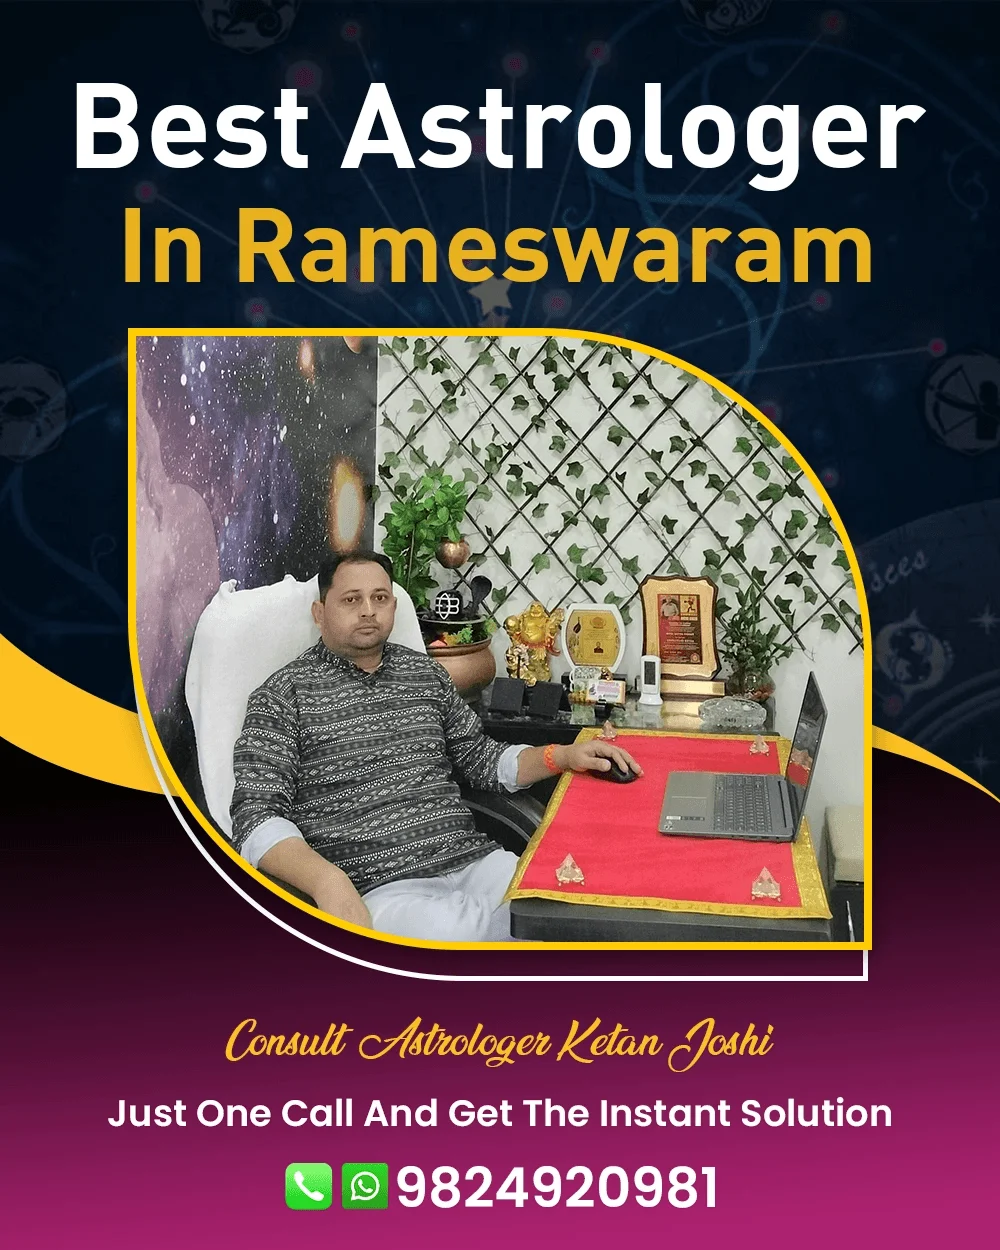 Best Astrologer In Rameswaram